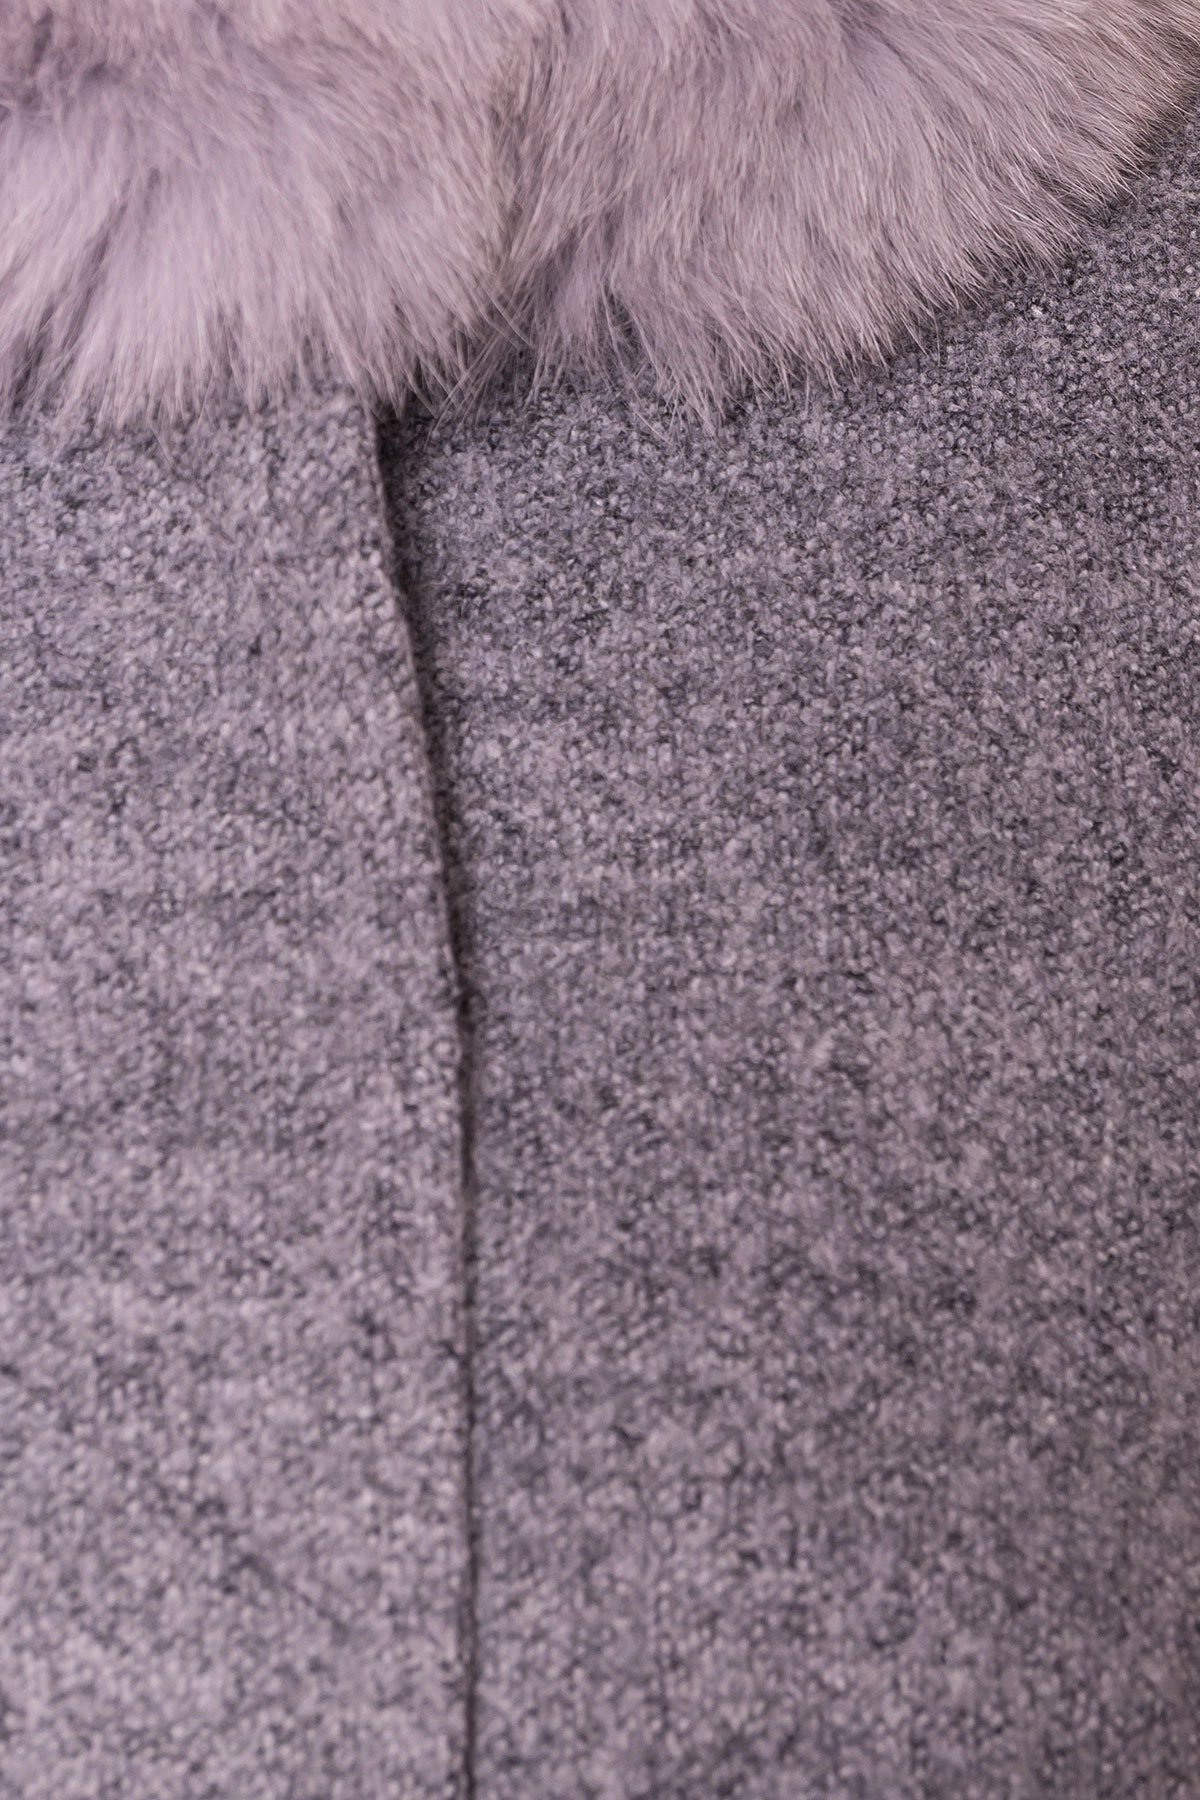 Зимнее утепленное пальто Donna Фортуна 3526 АРТ. 18074 Цвет: Серый 48 - фото 5, интернет магазин tm-modus.ru